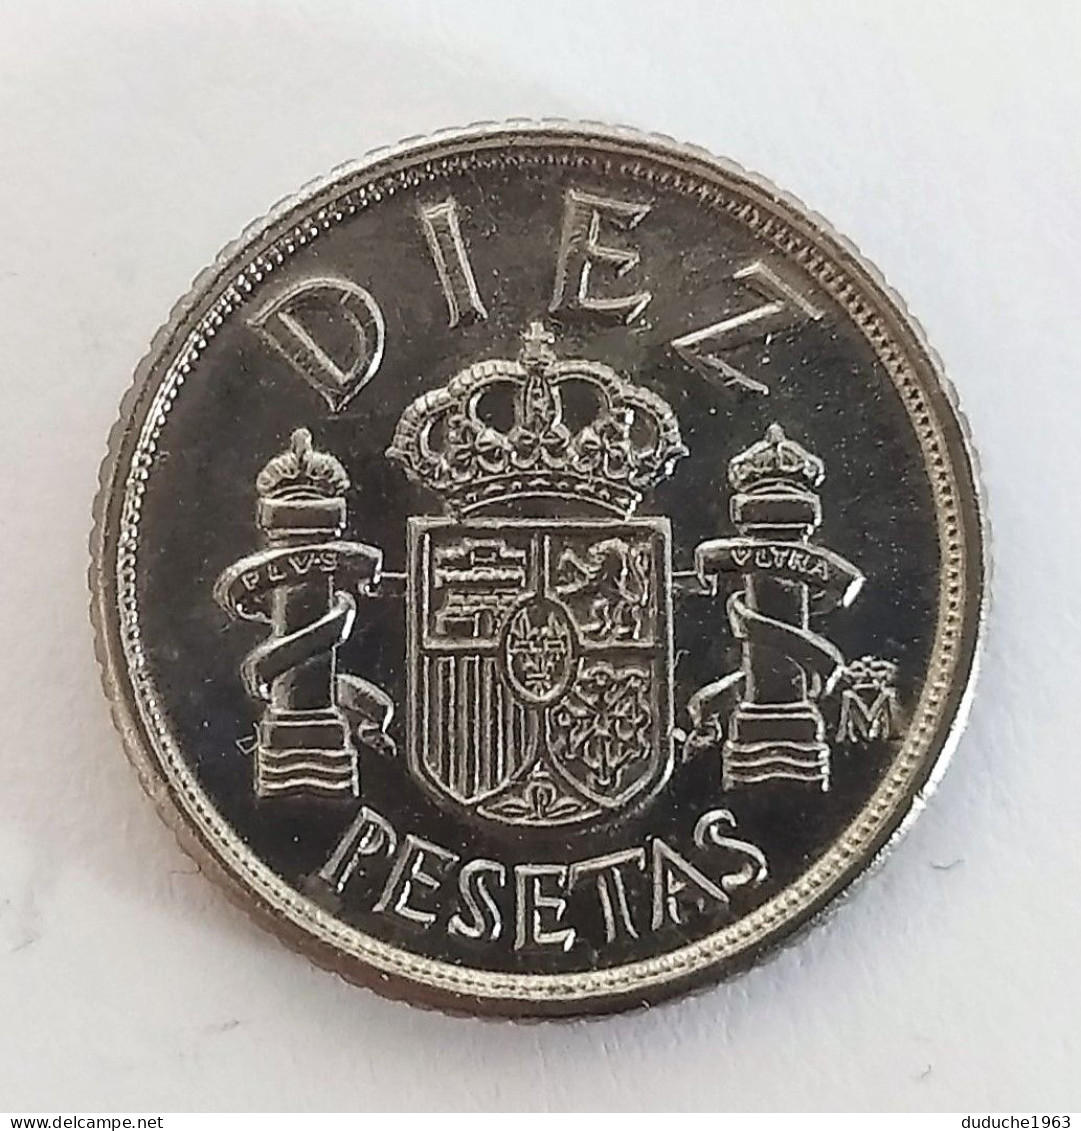 Espagne - 10 Pesetas 1983 - 10 Céntimos